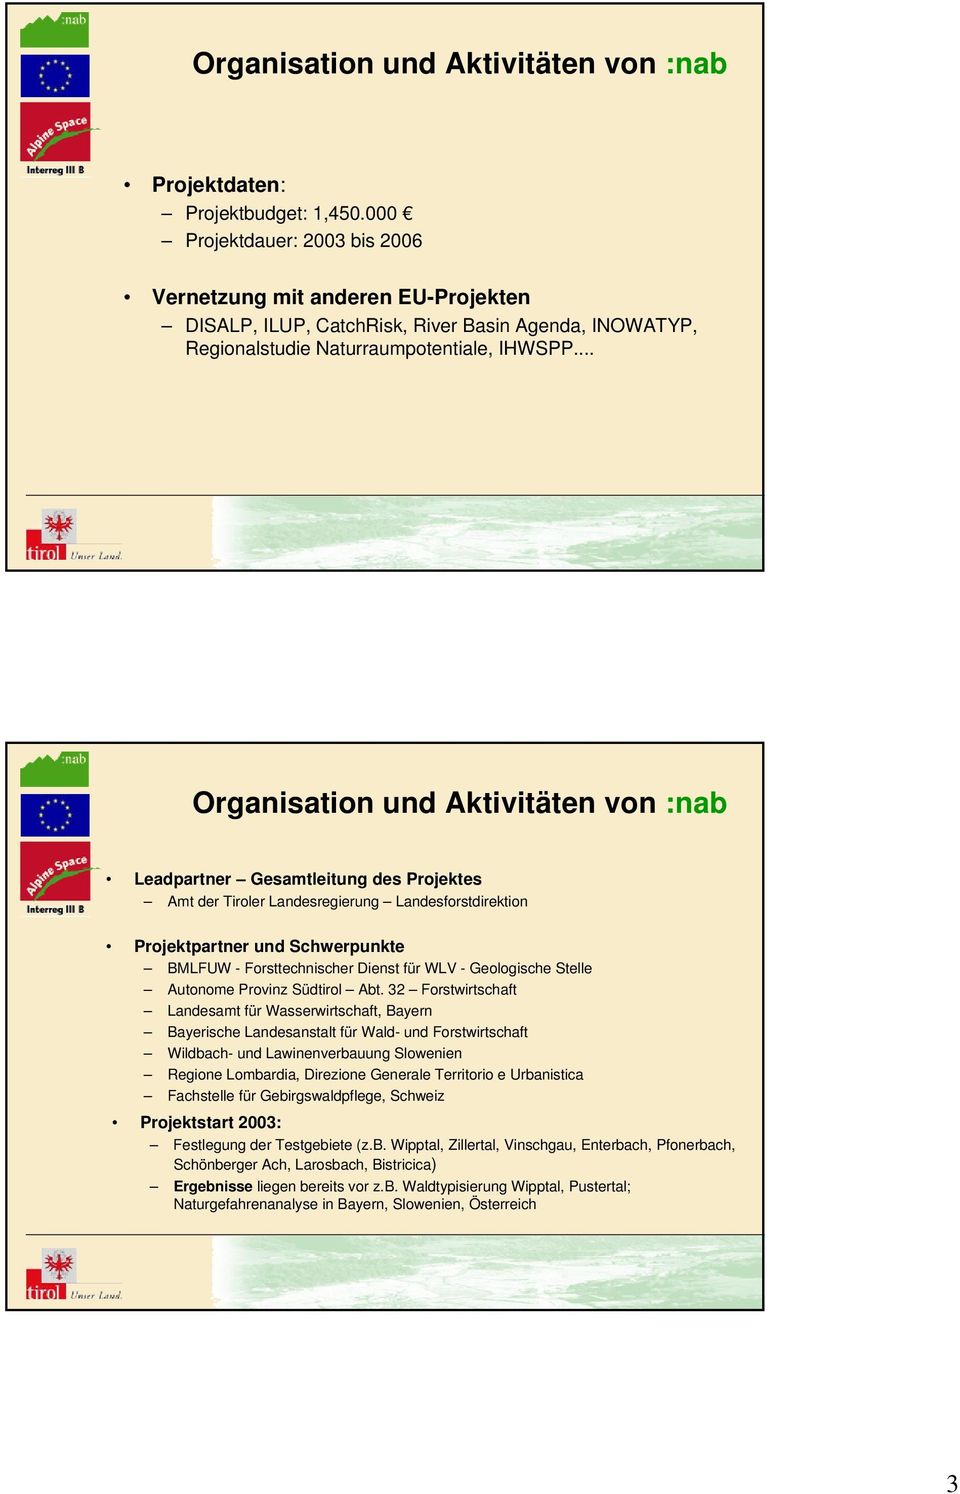 .. Organisation und Aktivitäten von :nab Leadpartner Gesamtleitung des Projektes Amt der Tiroler Landesregierung Landesforstdirektion Projektpartner und Schwerpunkte BMLFUW - Forsttechnischer Dienst